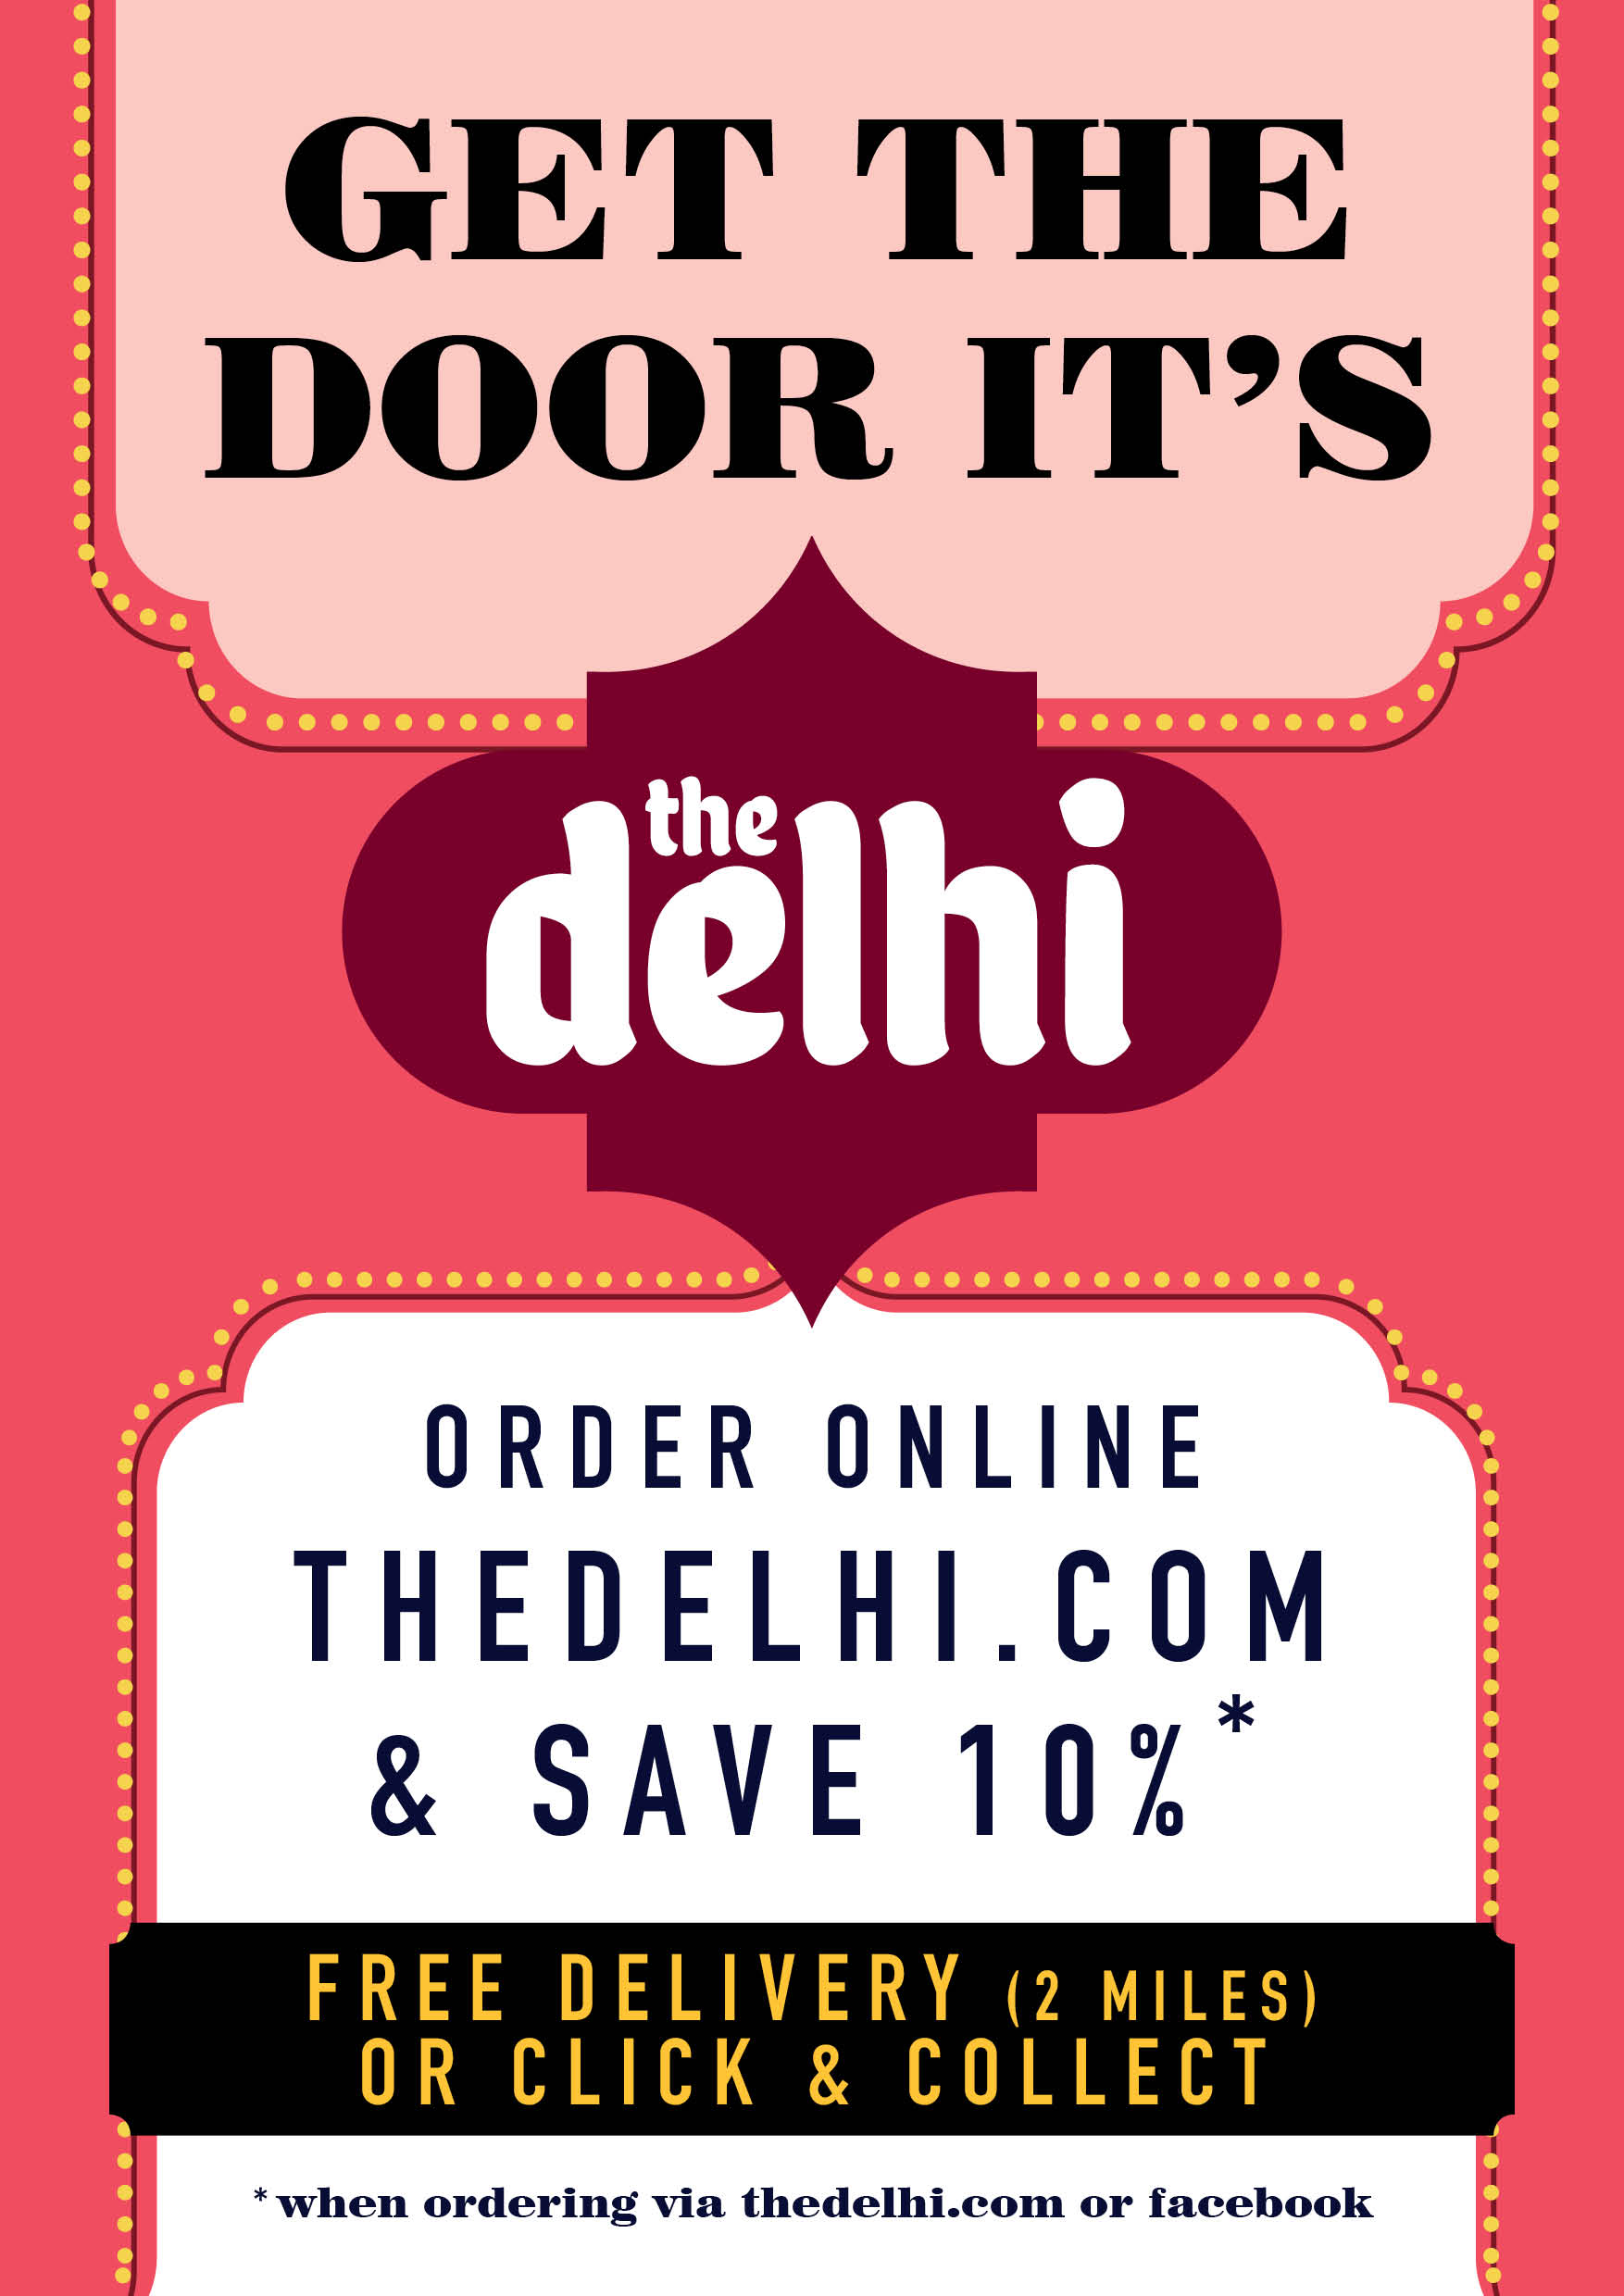 Get the door, it's the Delhi! Order online and save 10%